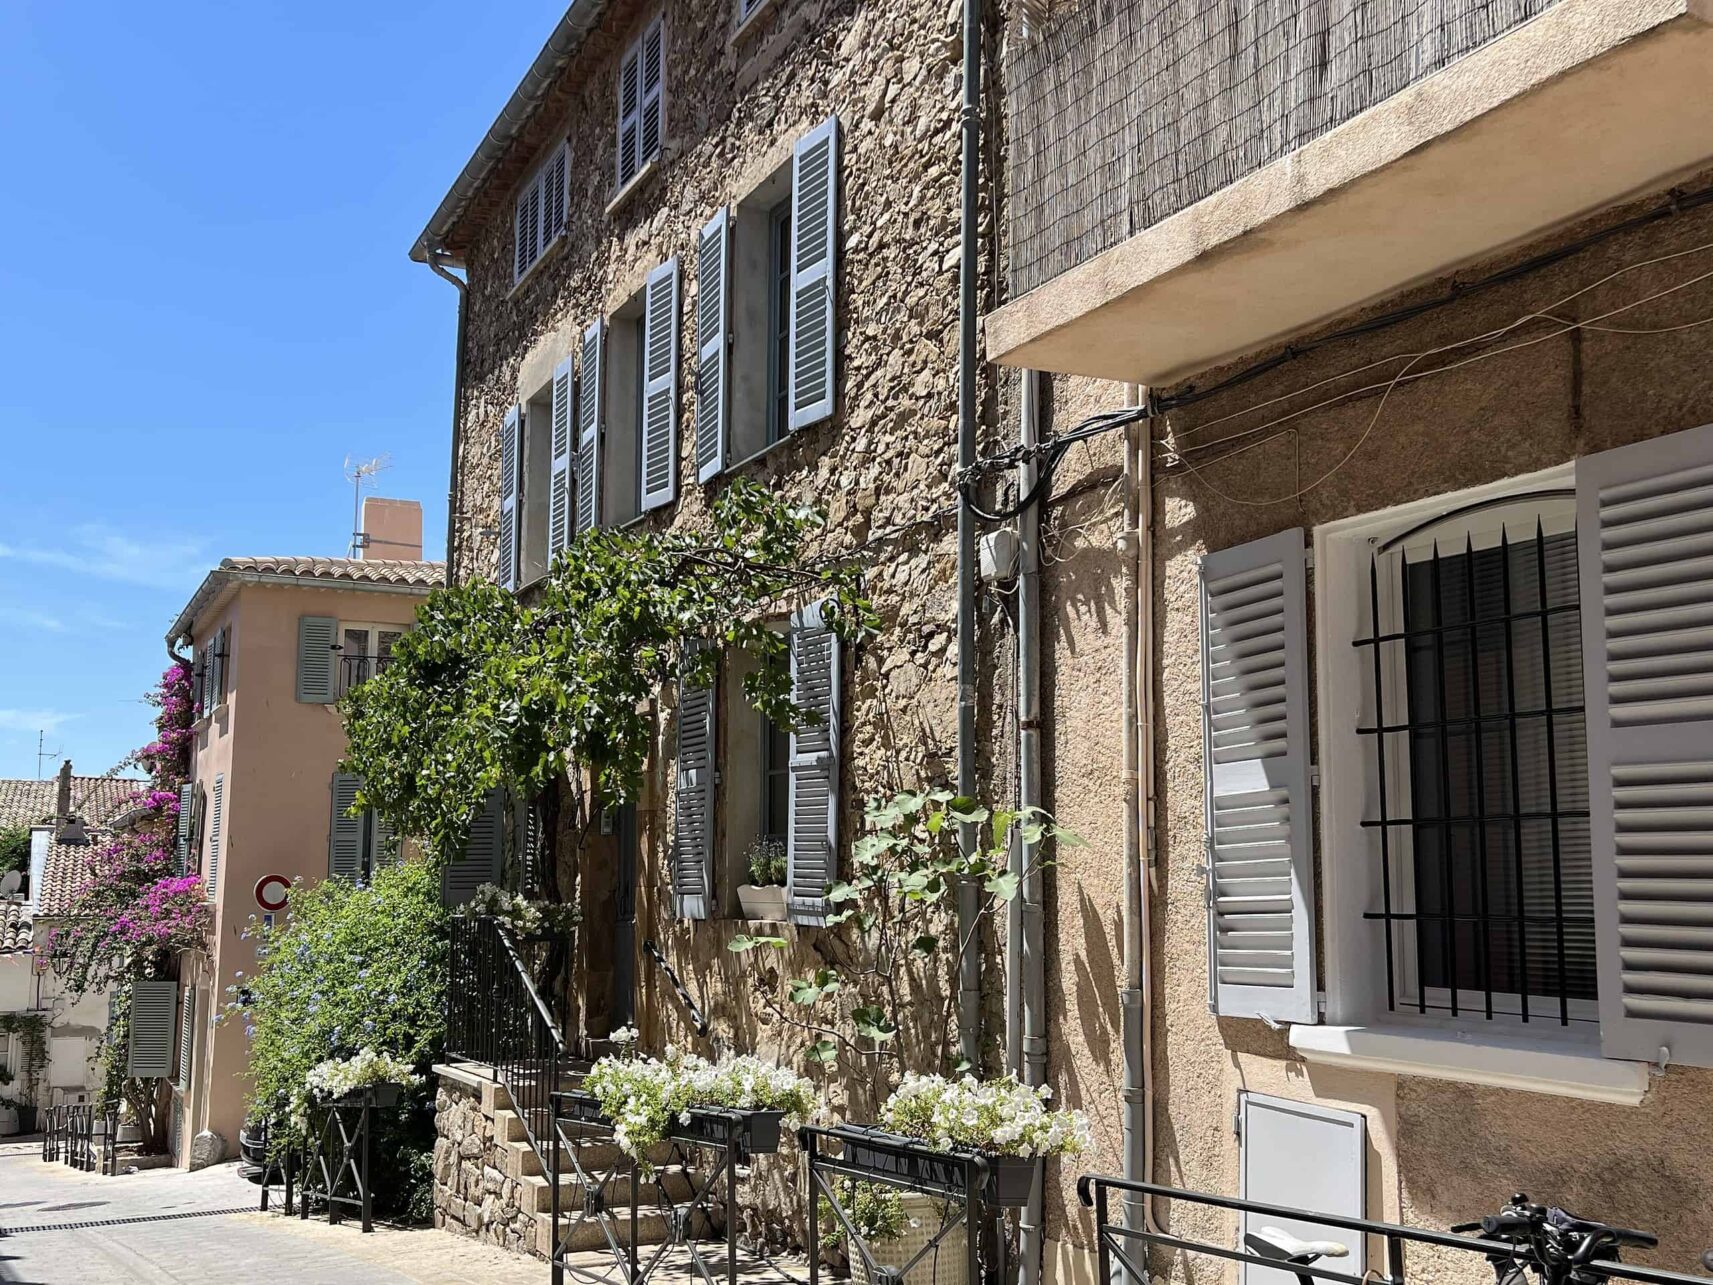 Bunte Häuser und feine Gassen in St. Tropez an der Cote d Azur in Frankreich.